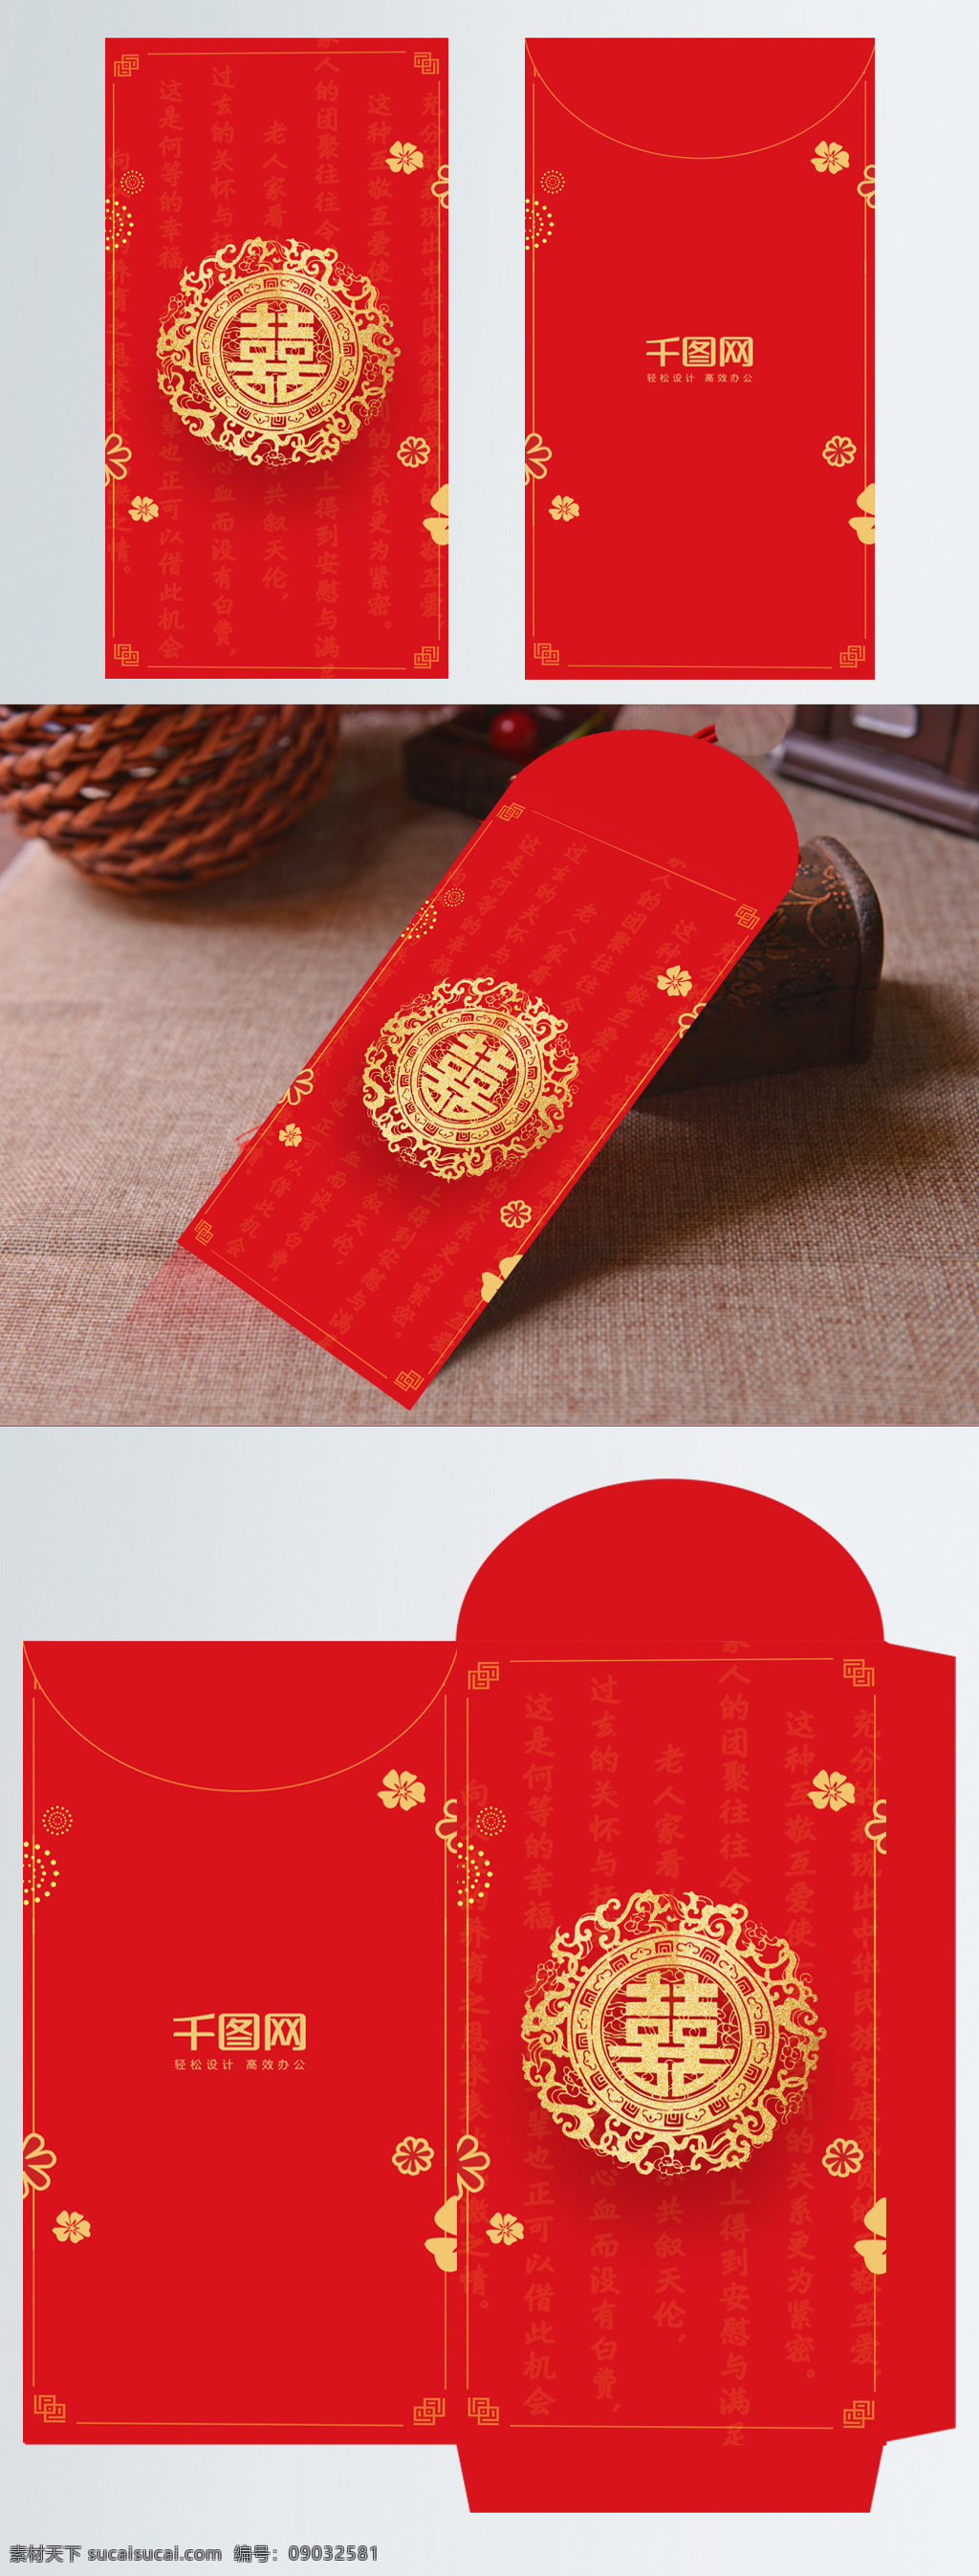 简约 红色 喜庆 红包 模板 大气 红包设计 红包设计模板 喜庆红包 新年红包